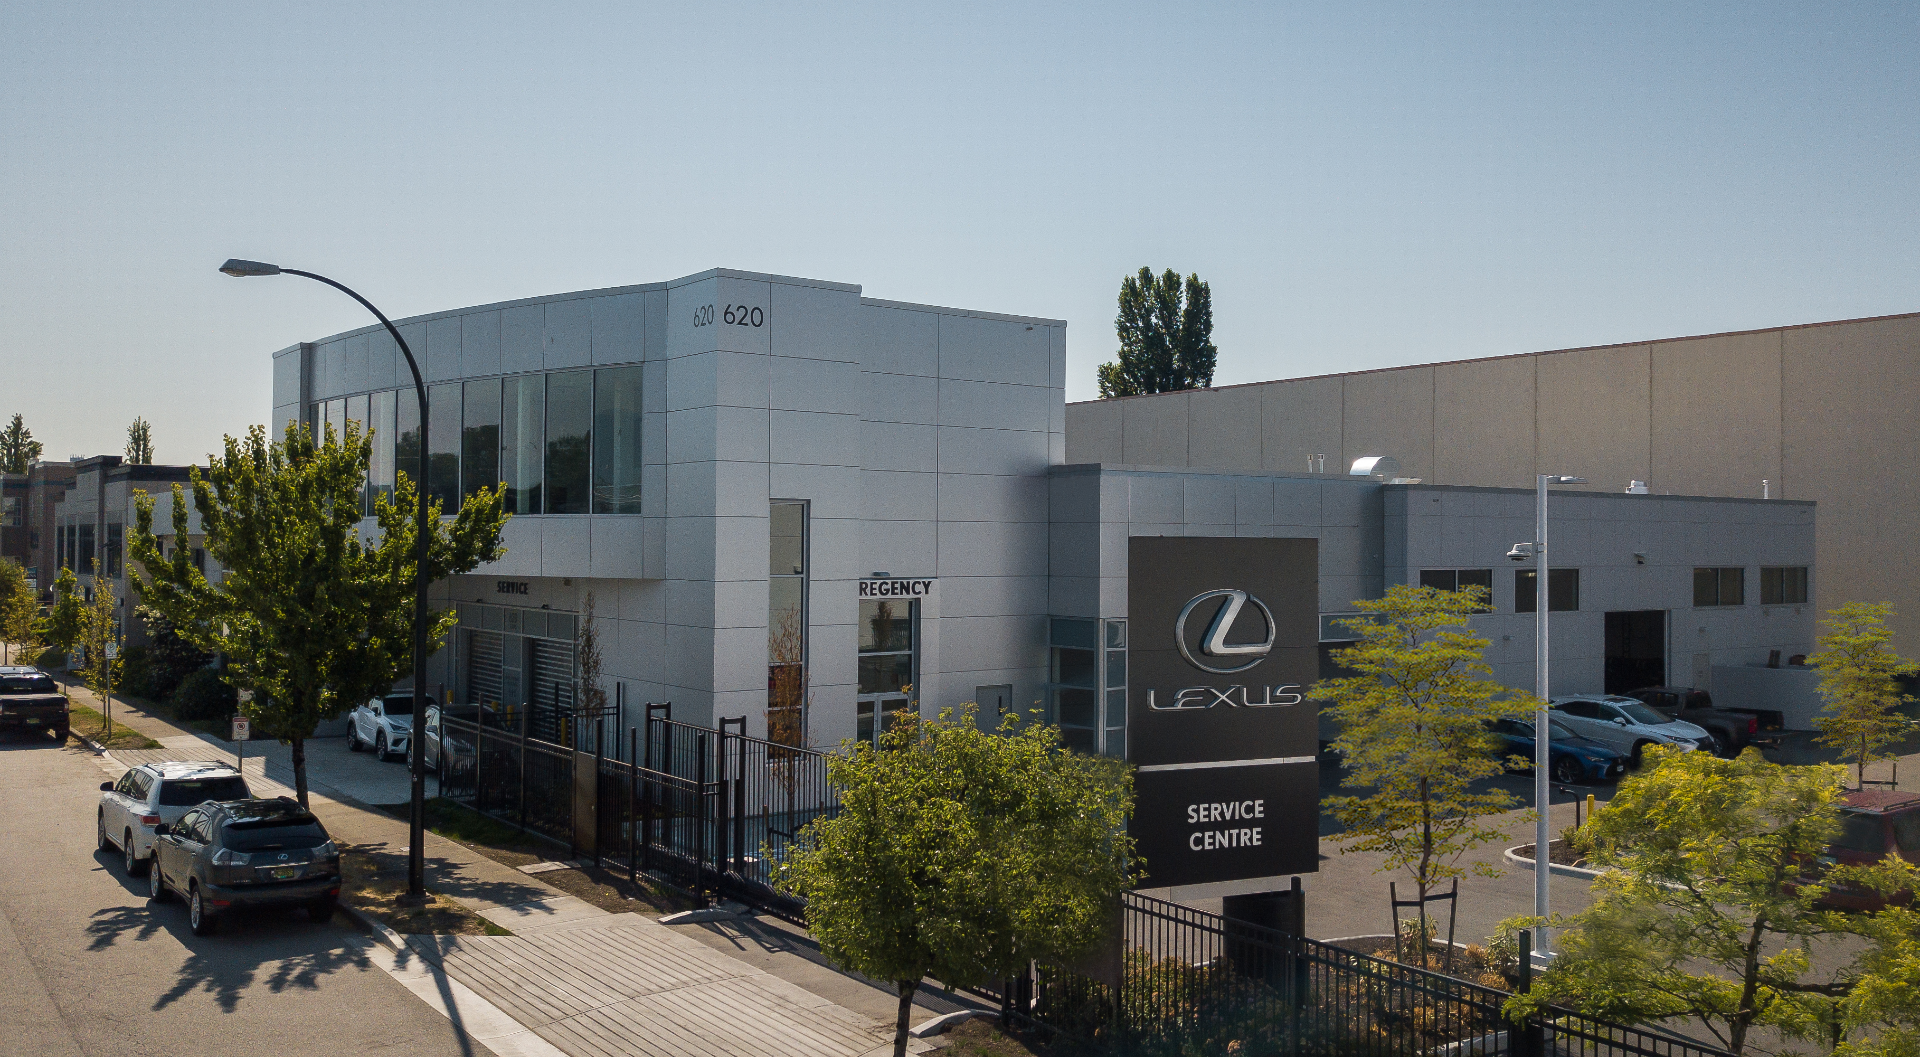 Our New Lexus Parts & Service Centre at 620 Evans Avenue is Now Open!